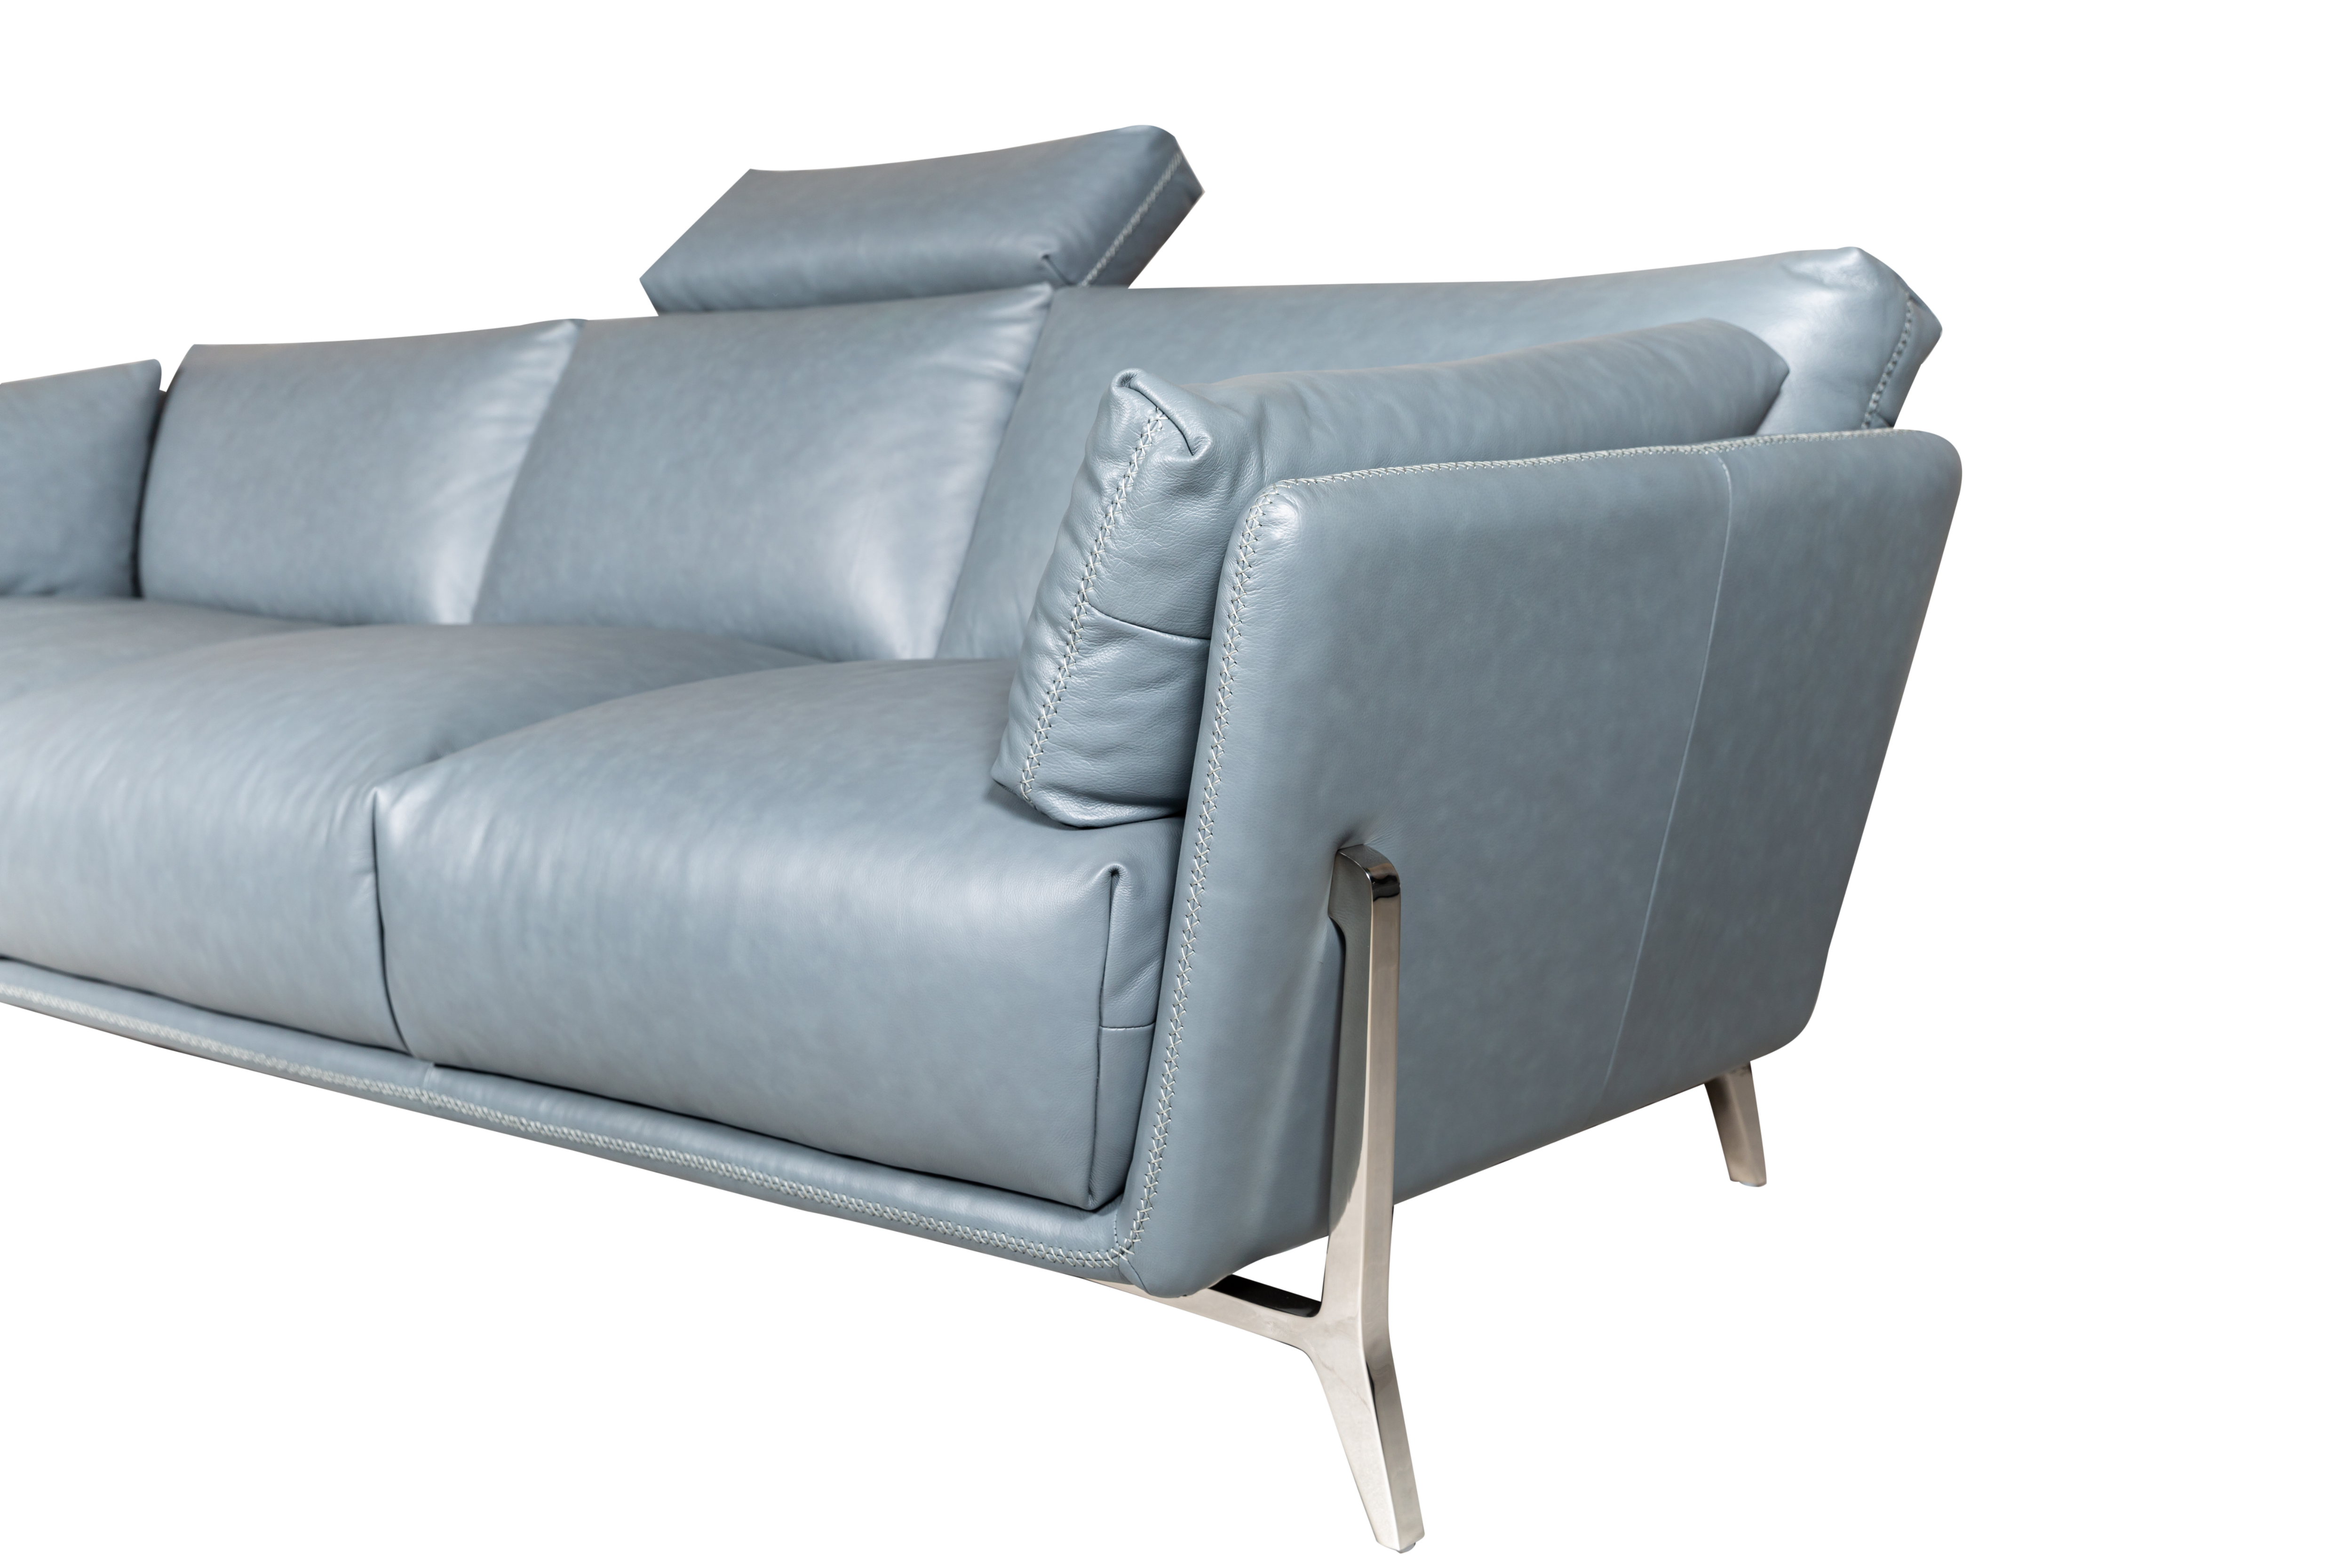 Alessandro 3-Seater Sofa Grey